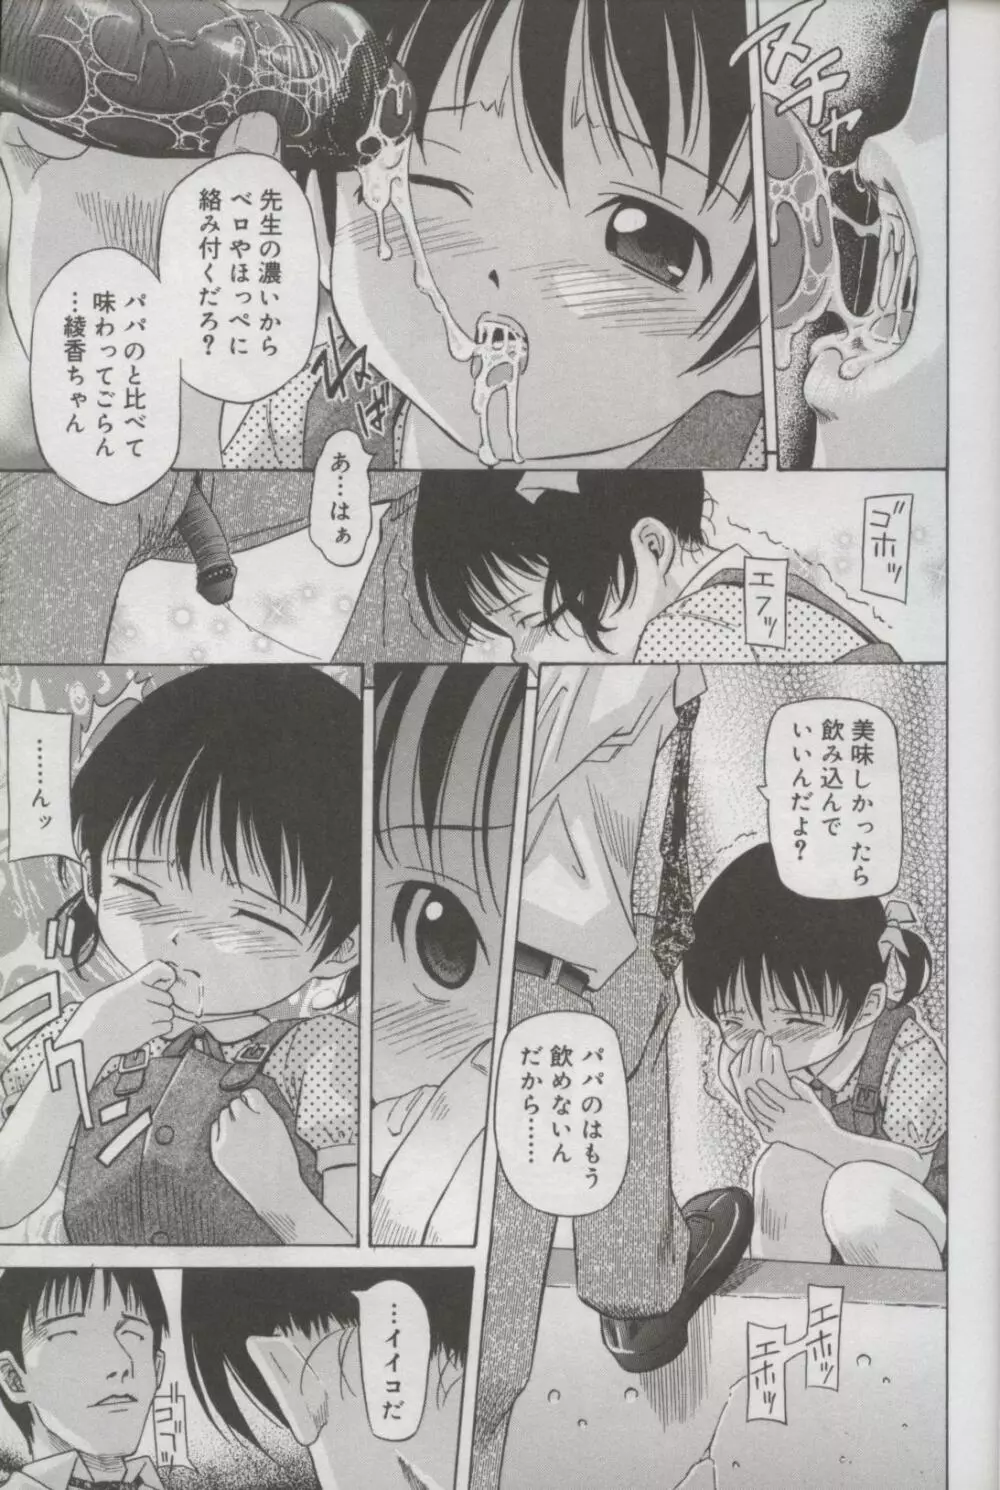 Kotori-kan Vol 3 12ページ